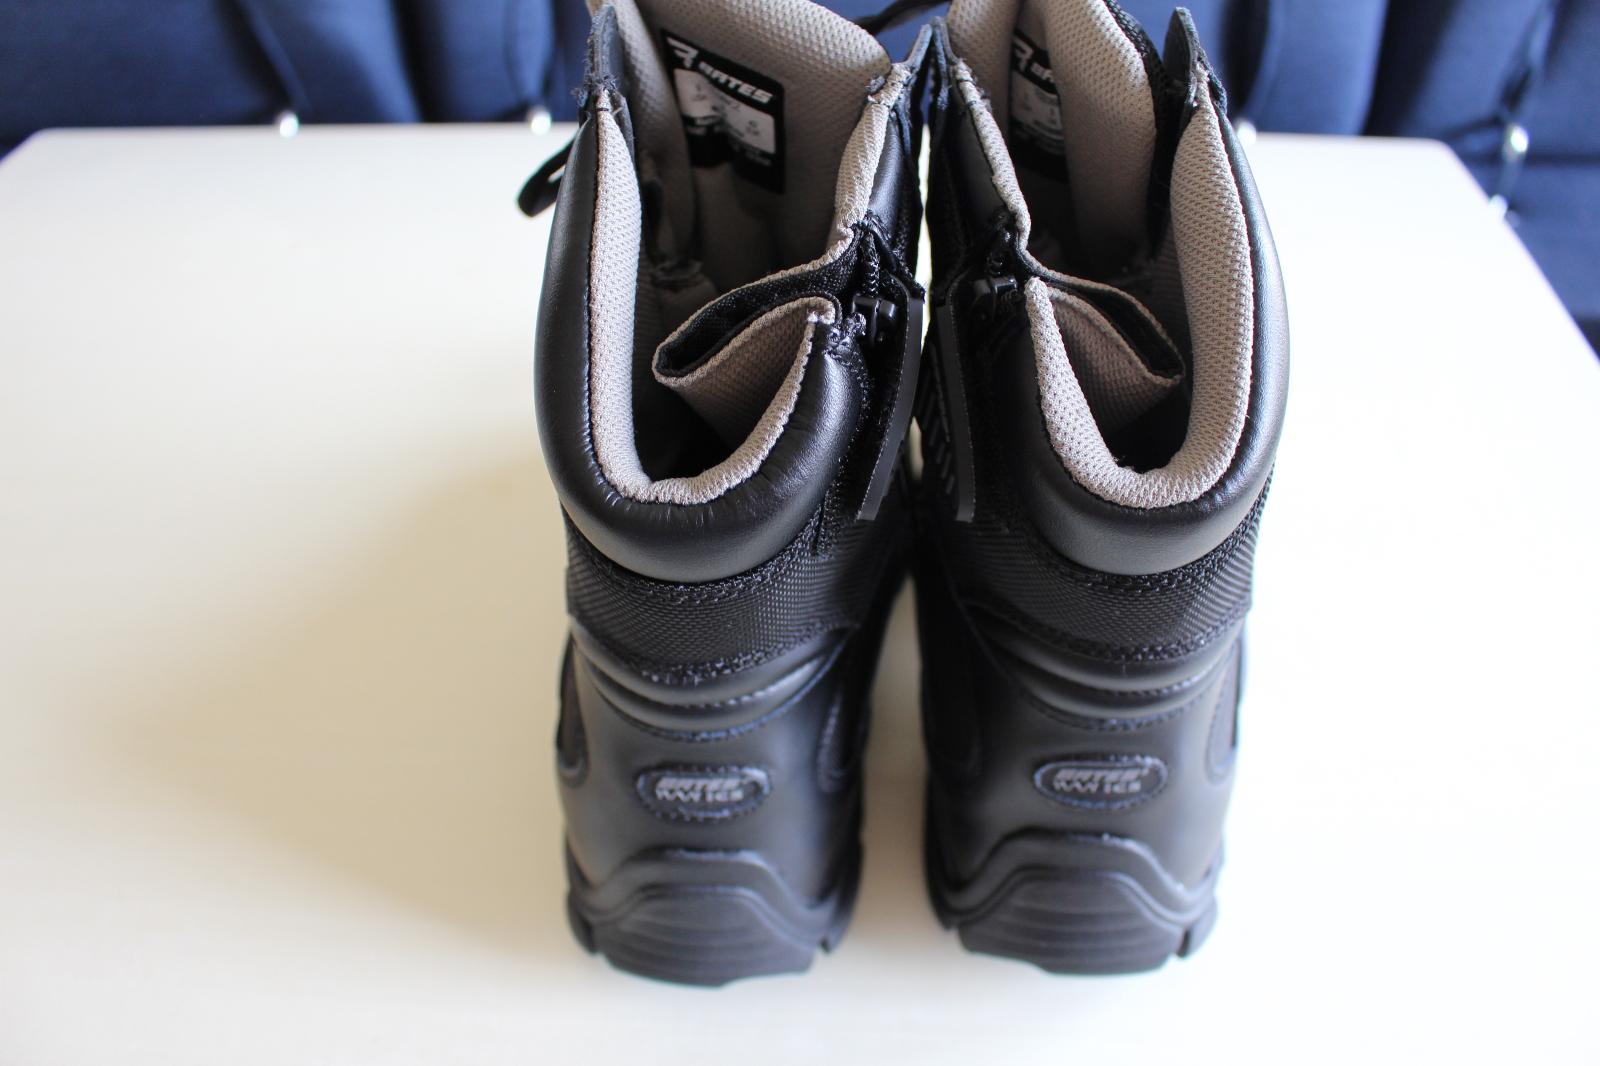 Vysoké boty/kanady BATES Delta-8 vel. 41 - Oblečení, obuv a doplňky